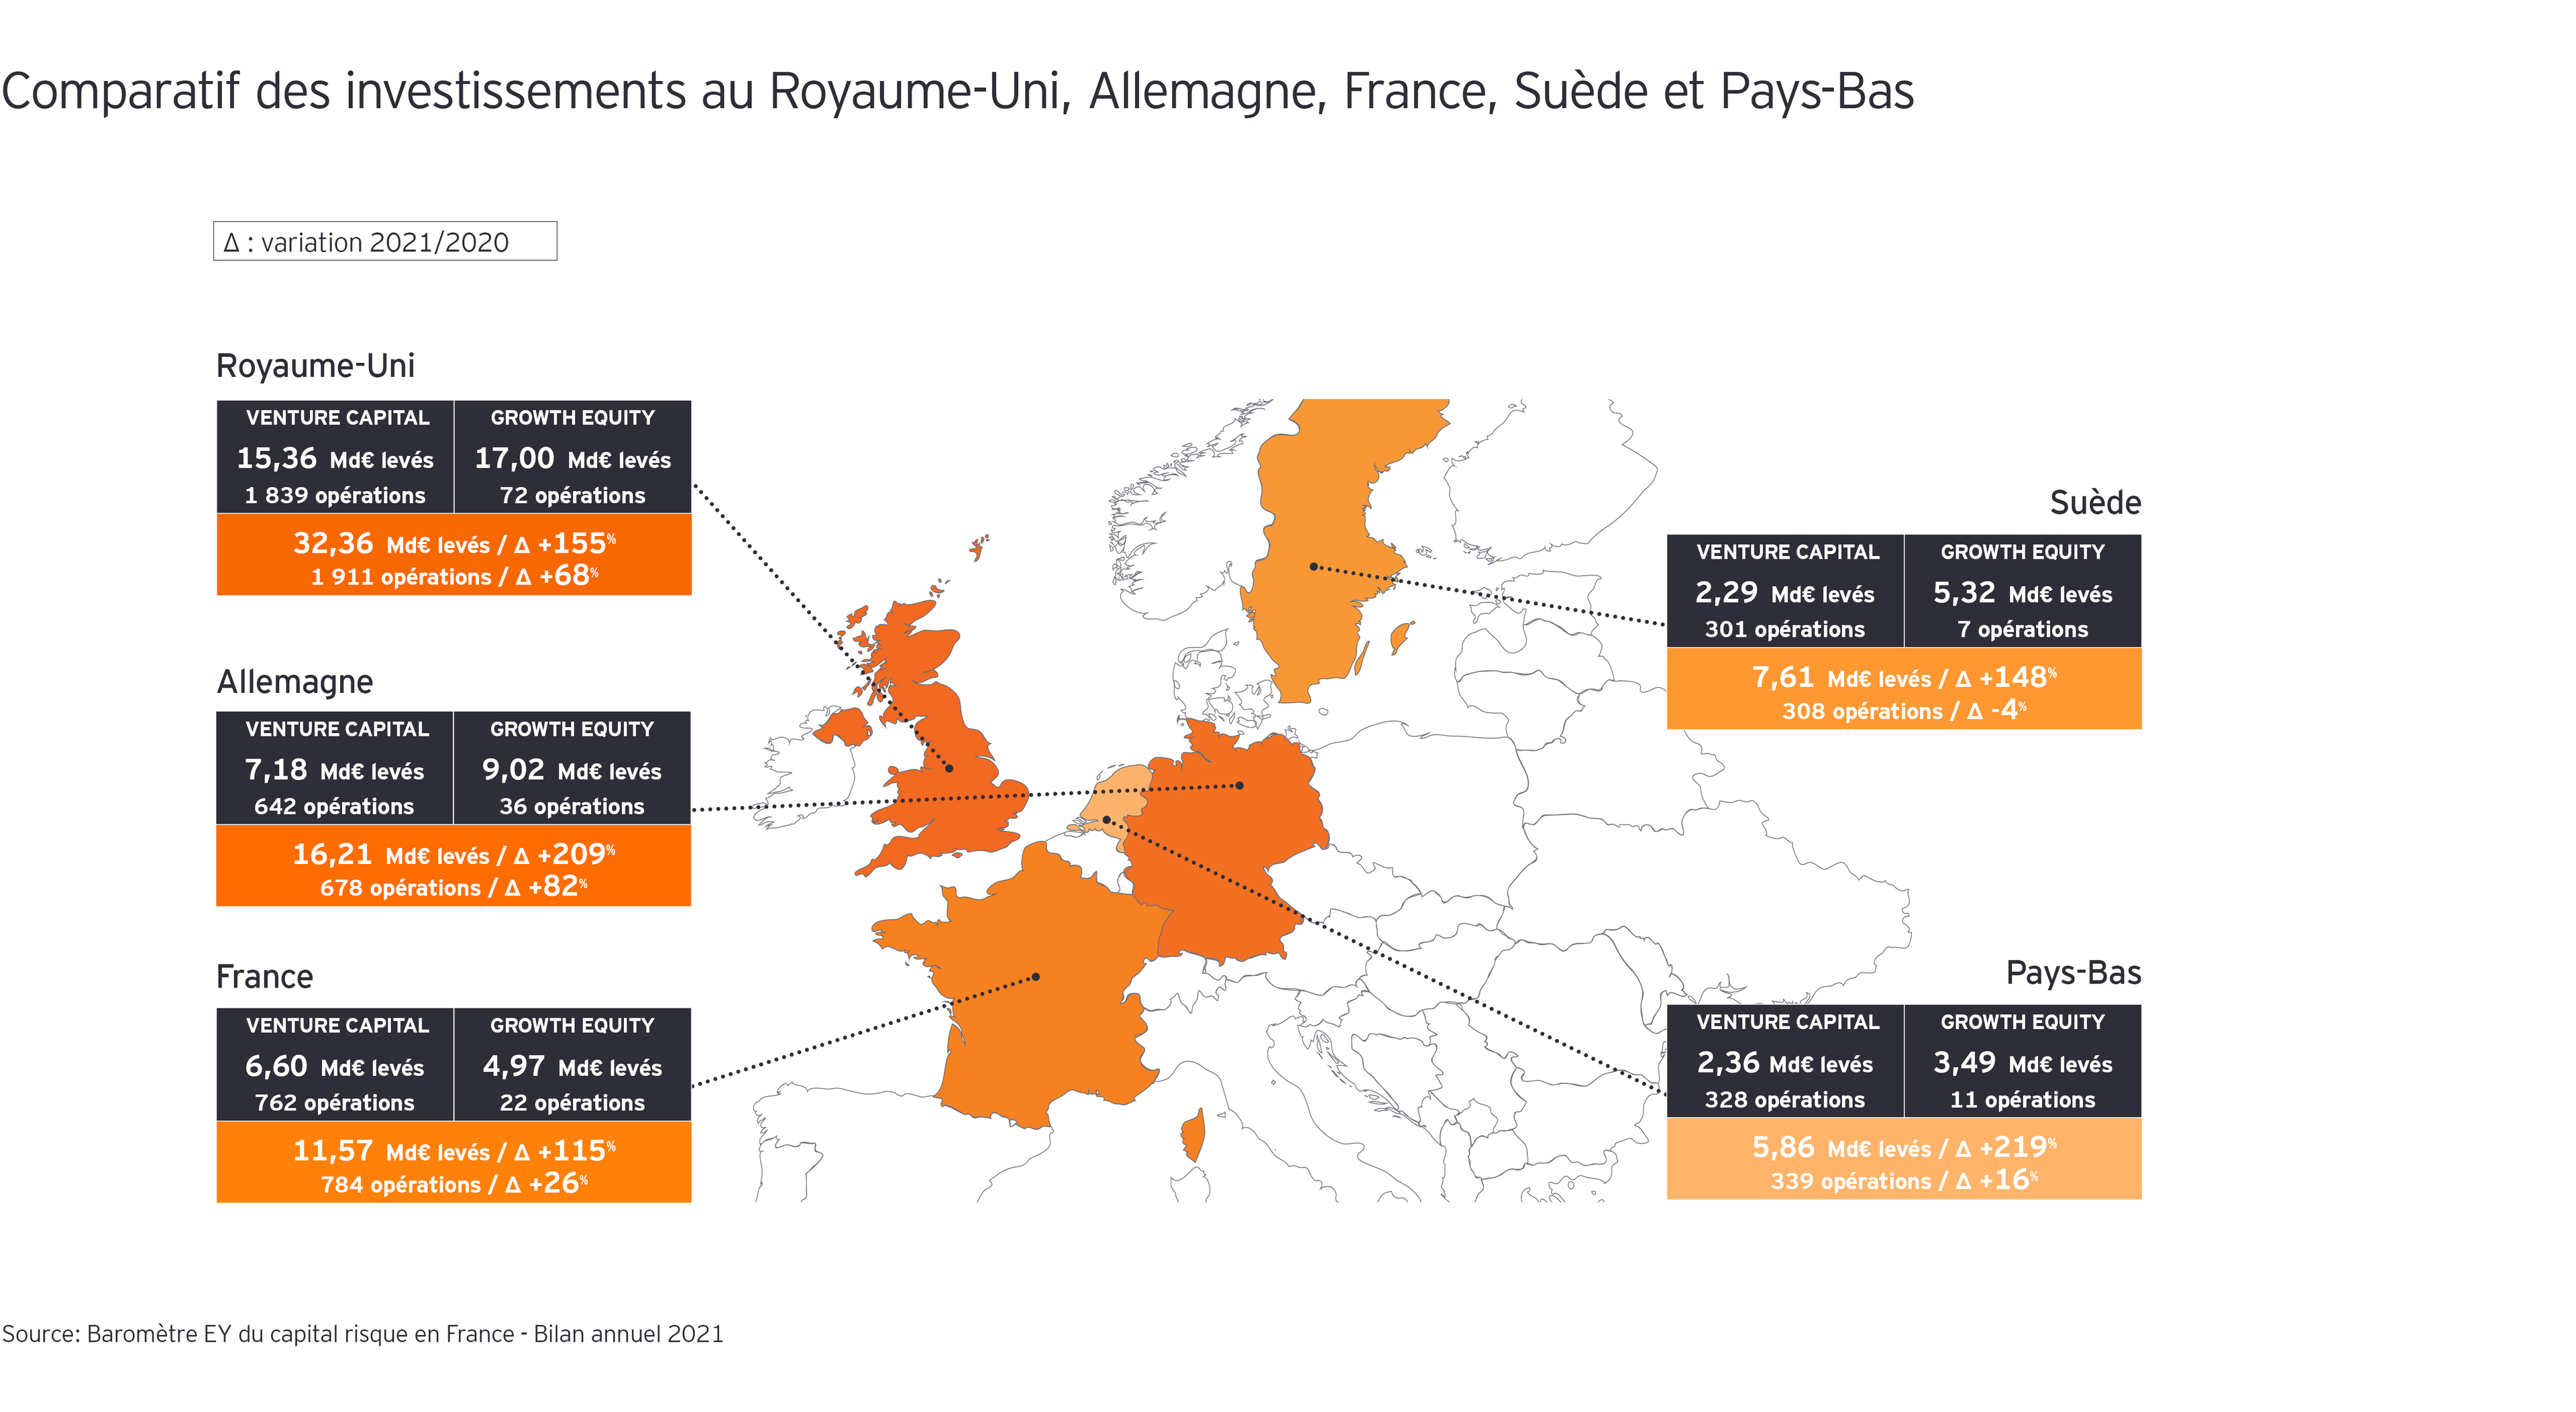 Comparatif des investissements au Royaume-Uni, en Allemagne, en France, en Suède et aux Pays-Bas